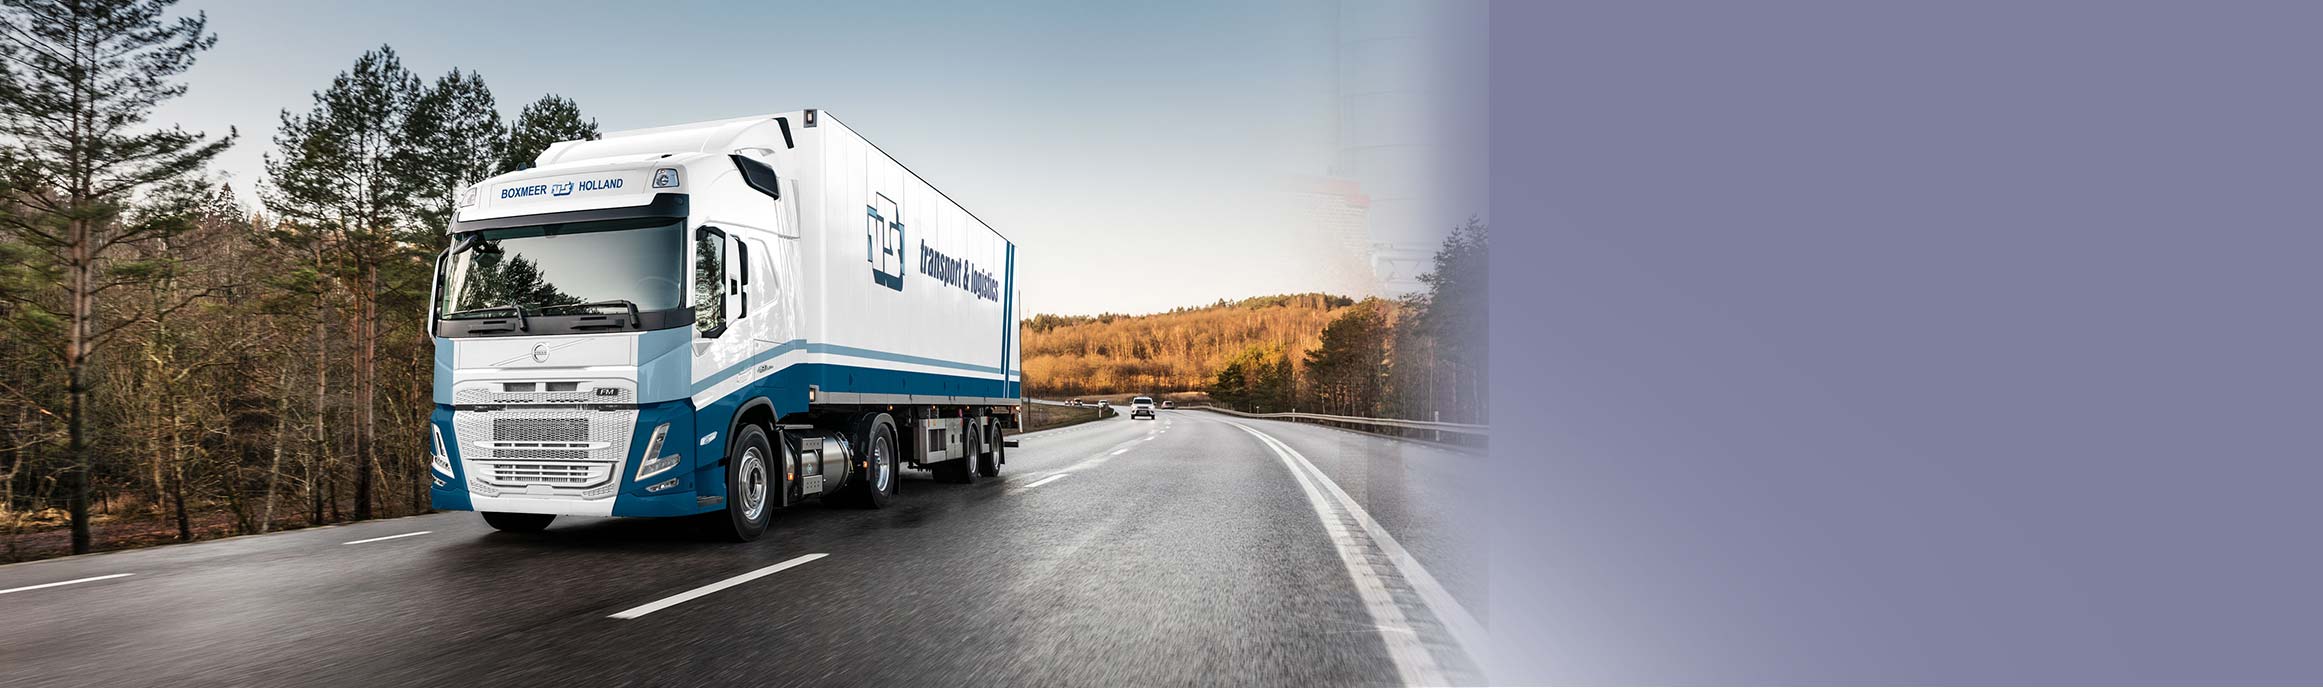 VTS Transport & Logistics gaat voor duurzame distributie met Volvo FM LNG